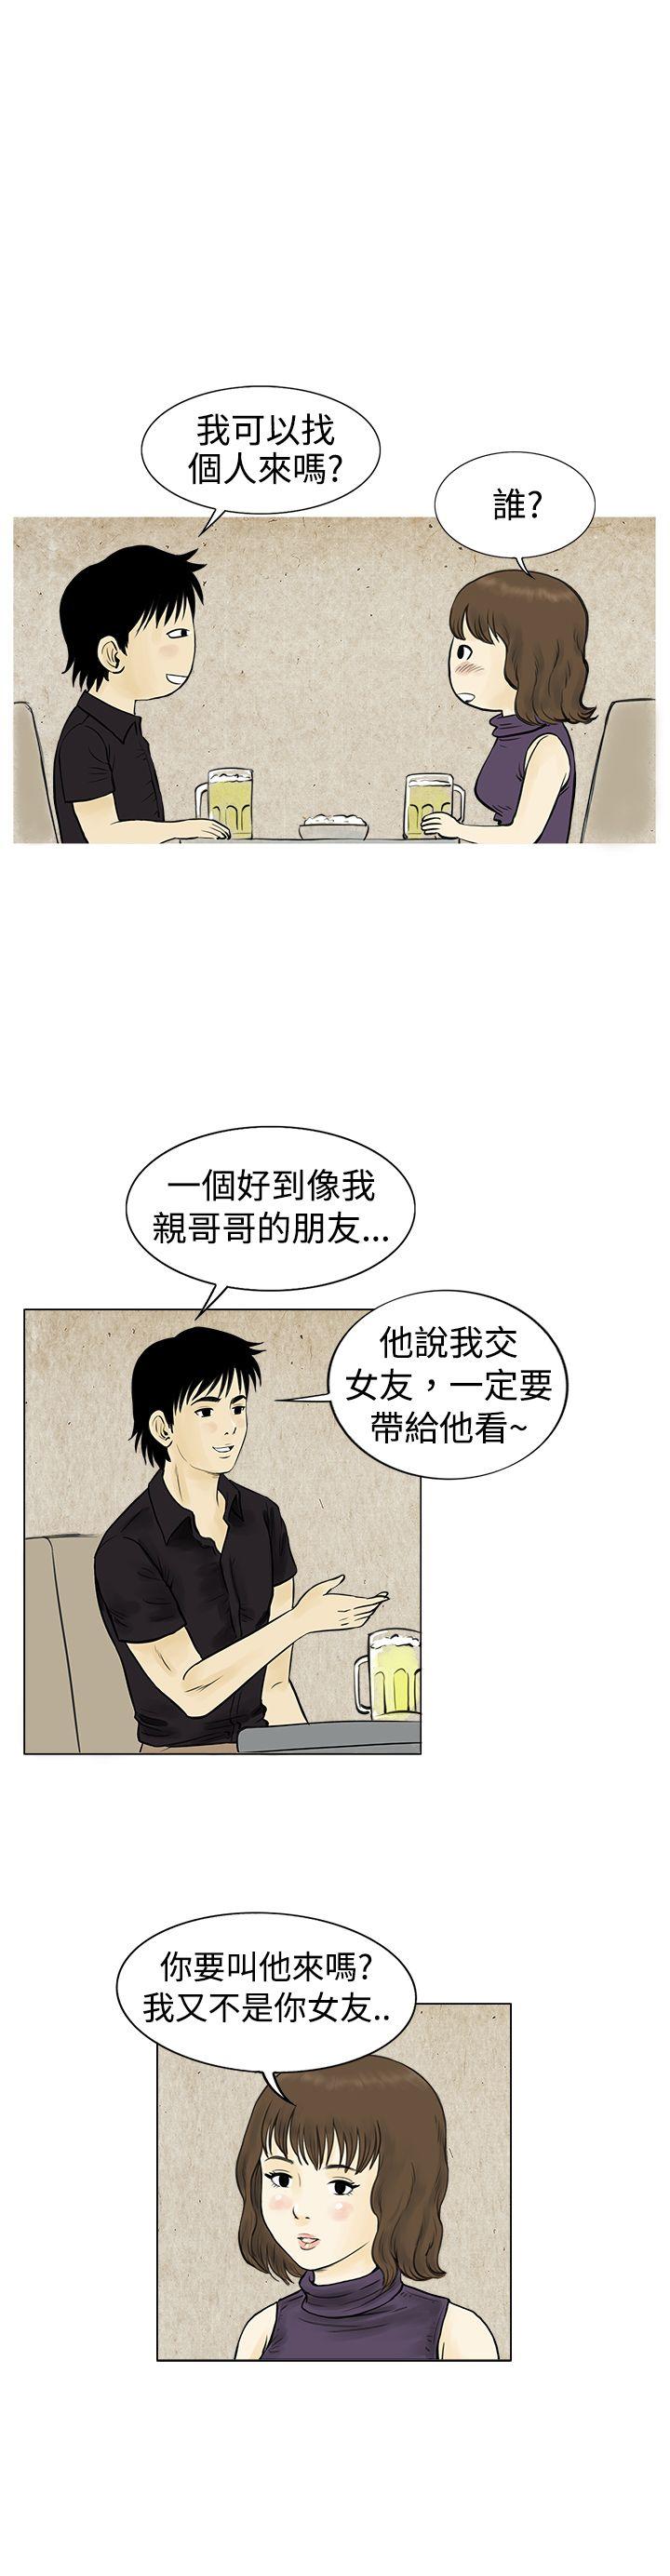 韩国污漫画 秘密Story 遇到渣男的旅馆逃亡记(上) 15